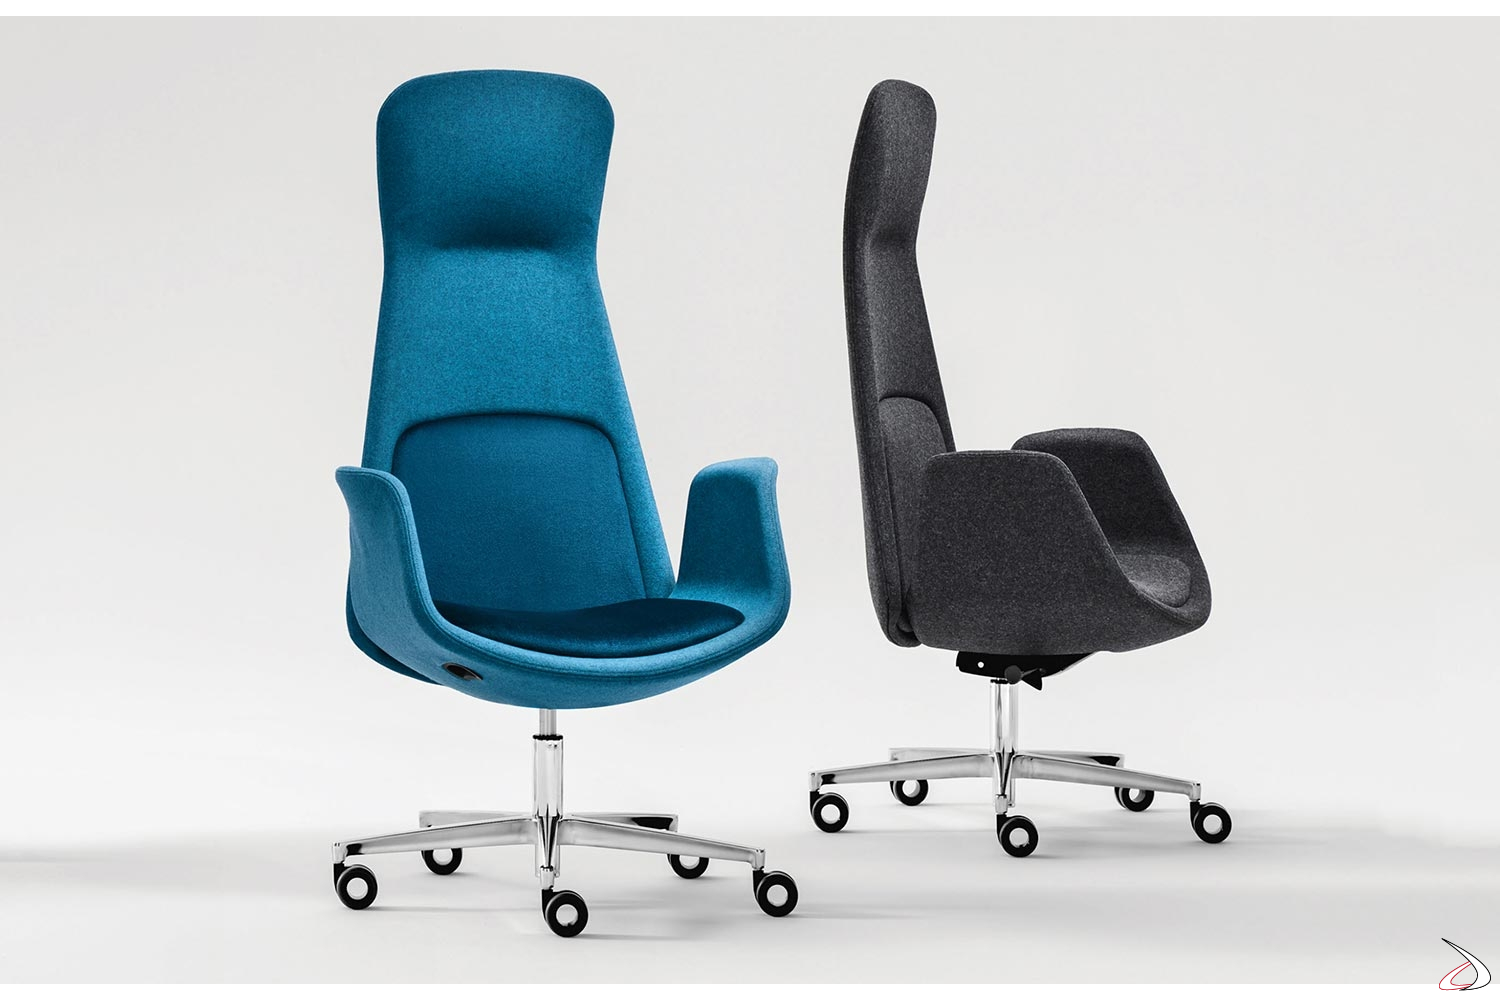 Poltrona Sweden di design ergonomica da ufficio